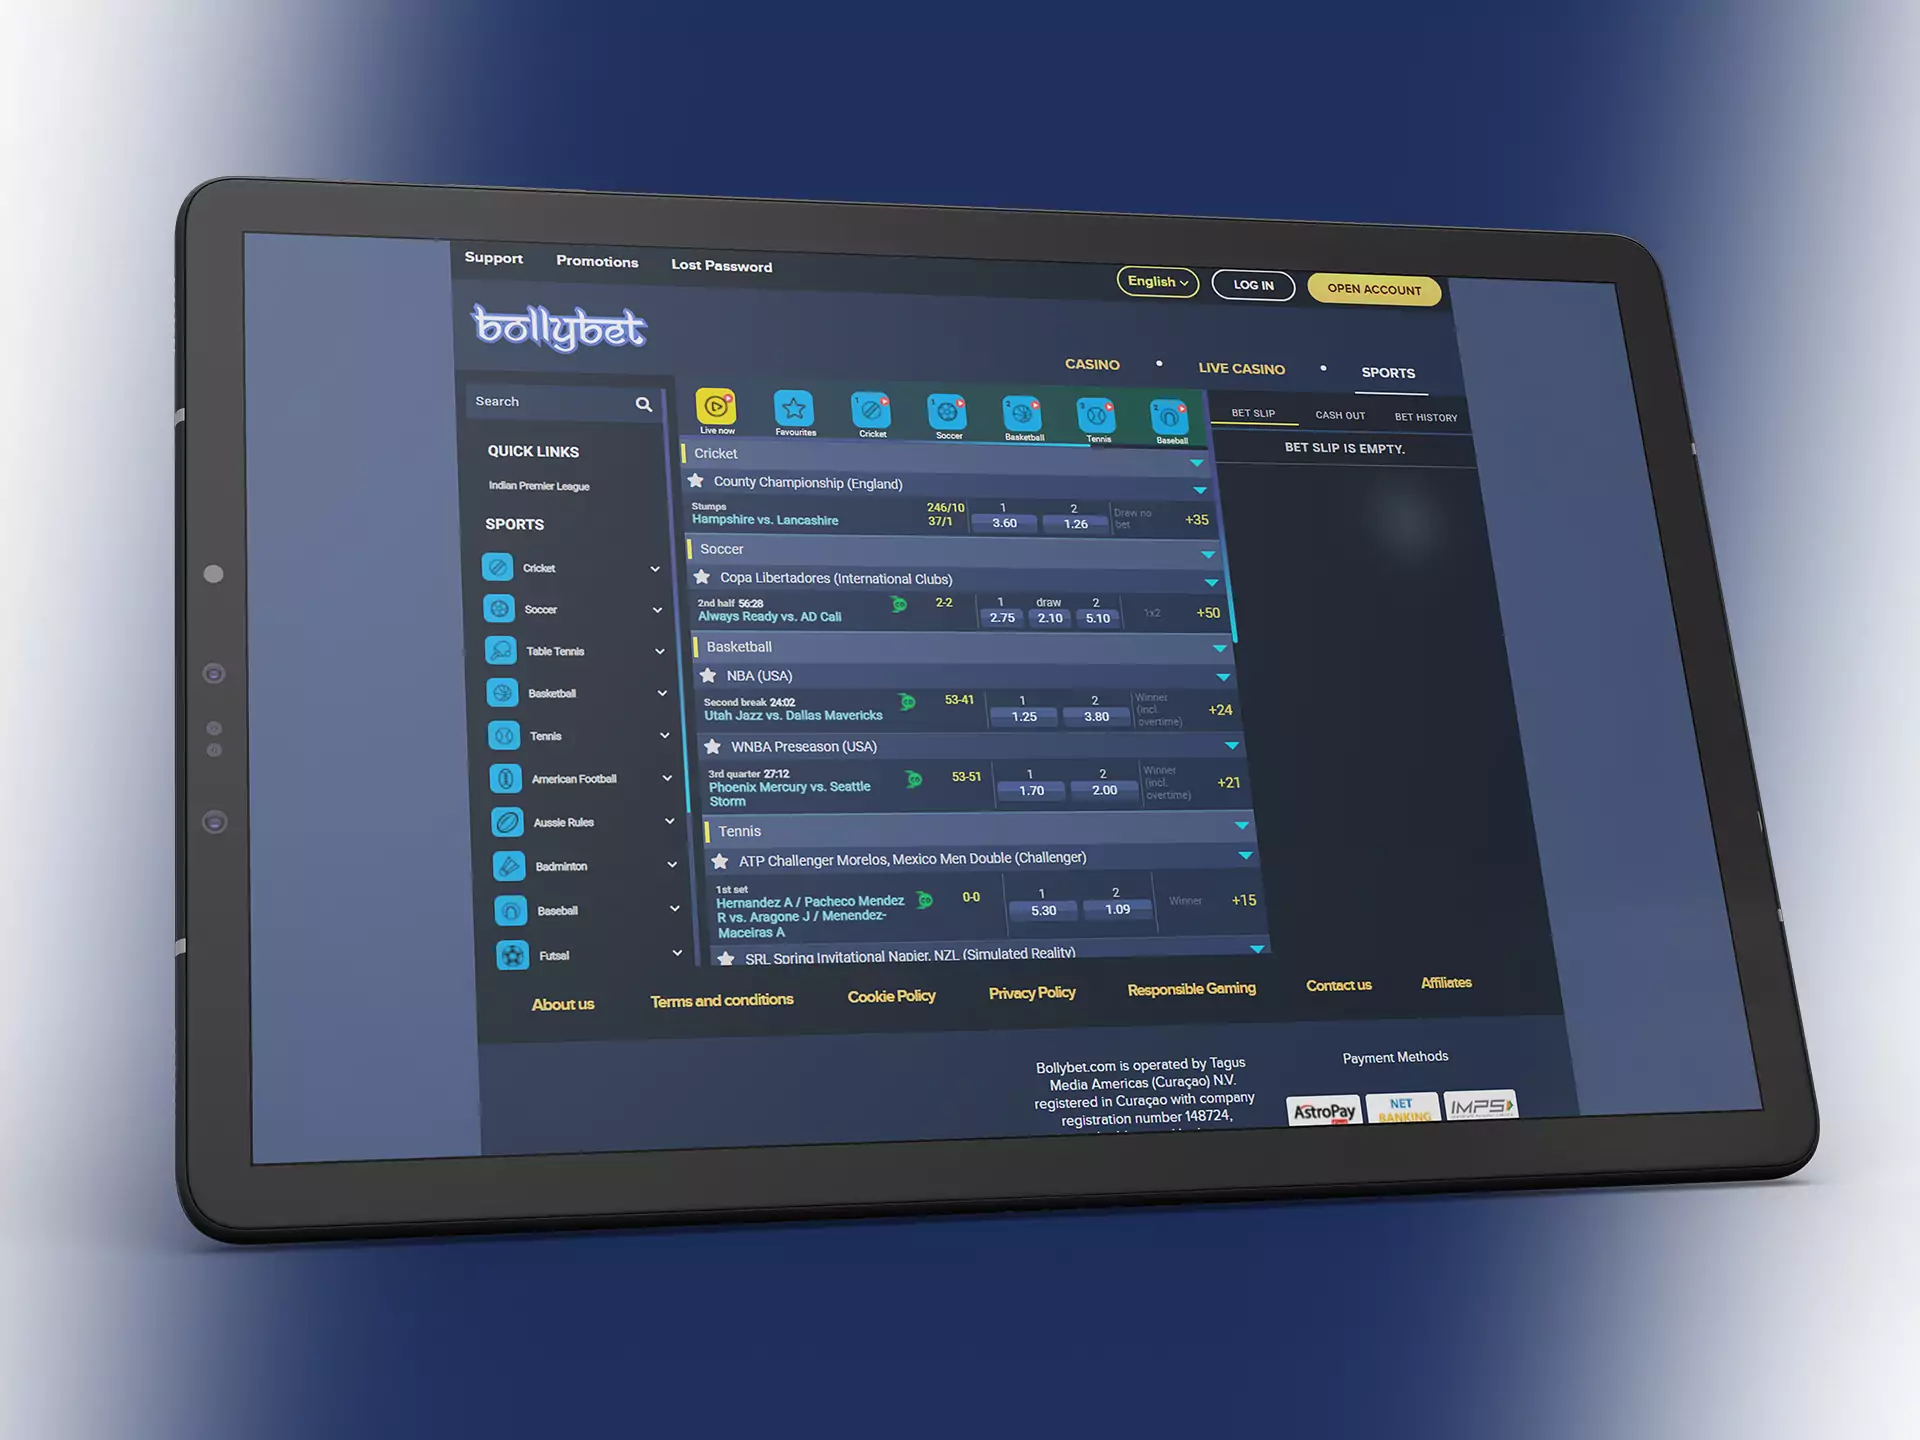 बॉलीबेट का मोबाइल संस्करण ऑनलाइन खेल सट्टेबाजी का समर्थन करता है।